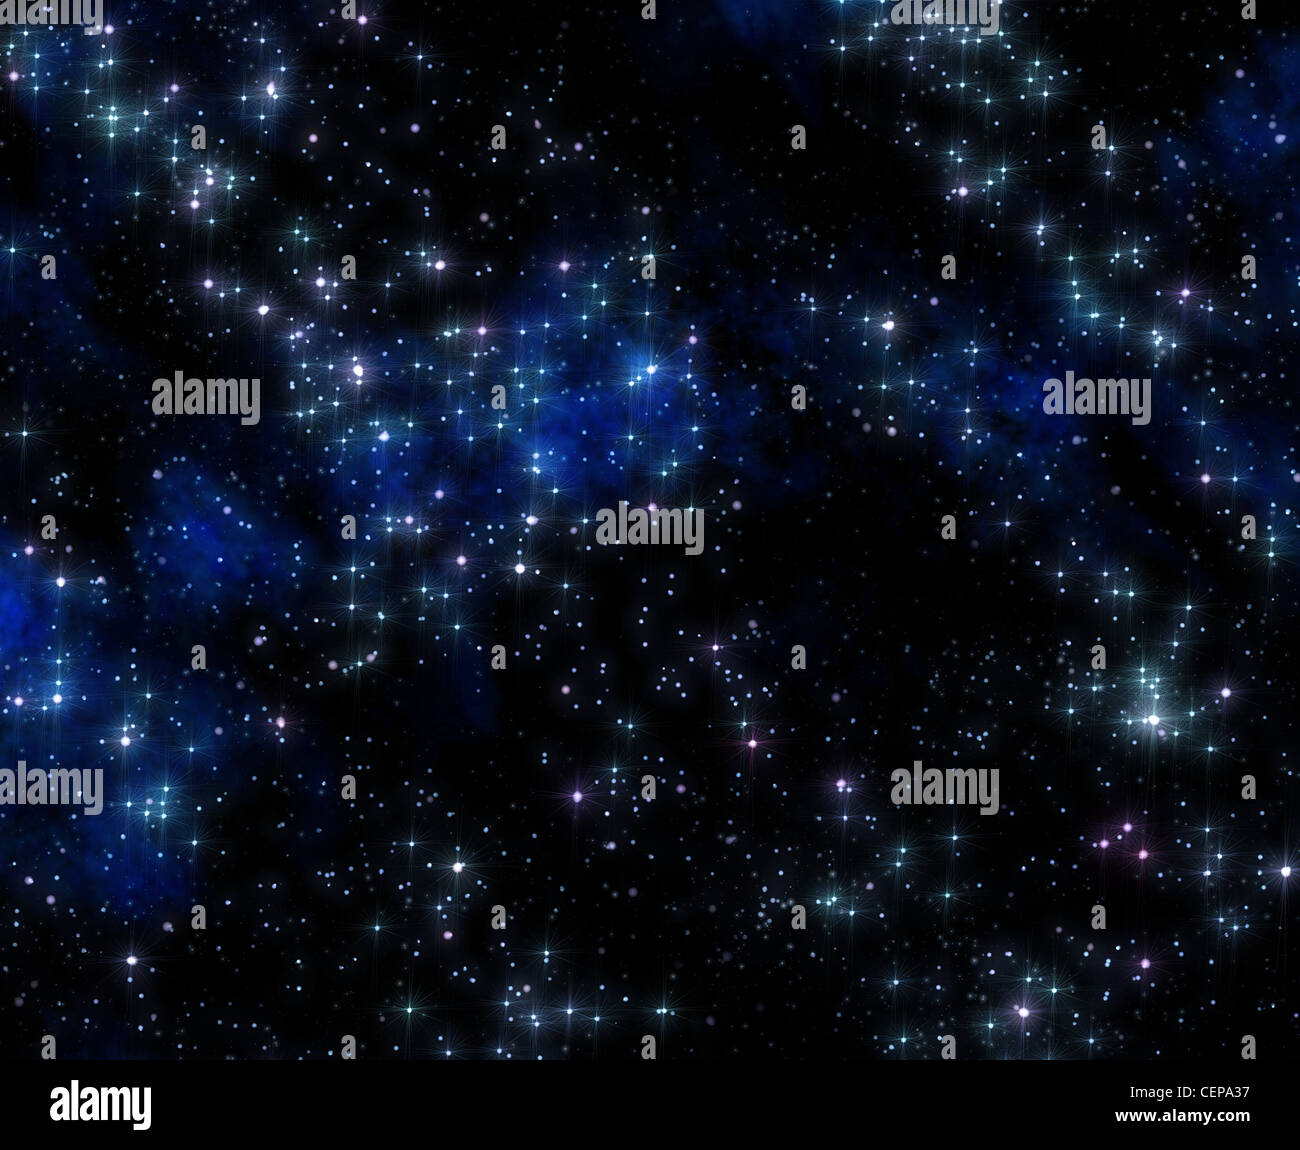 Beaucoup d'étoiles dans l'espace avec des nuages de la nébuleuse bleue Banque D'Images